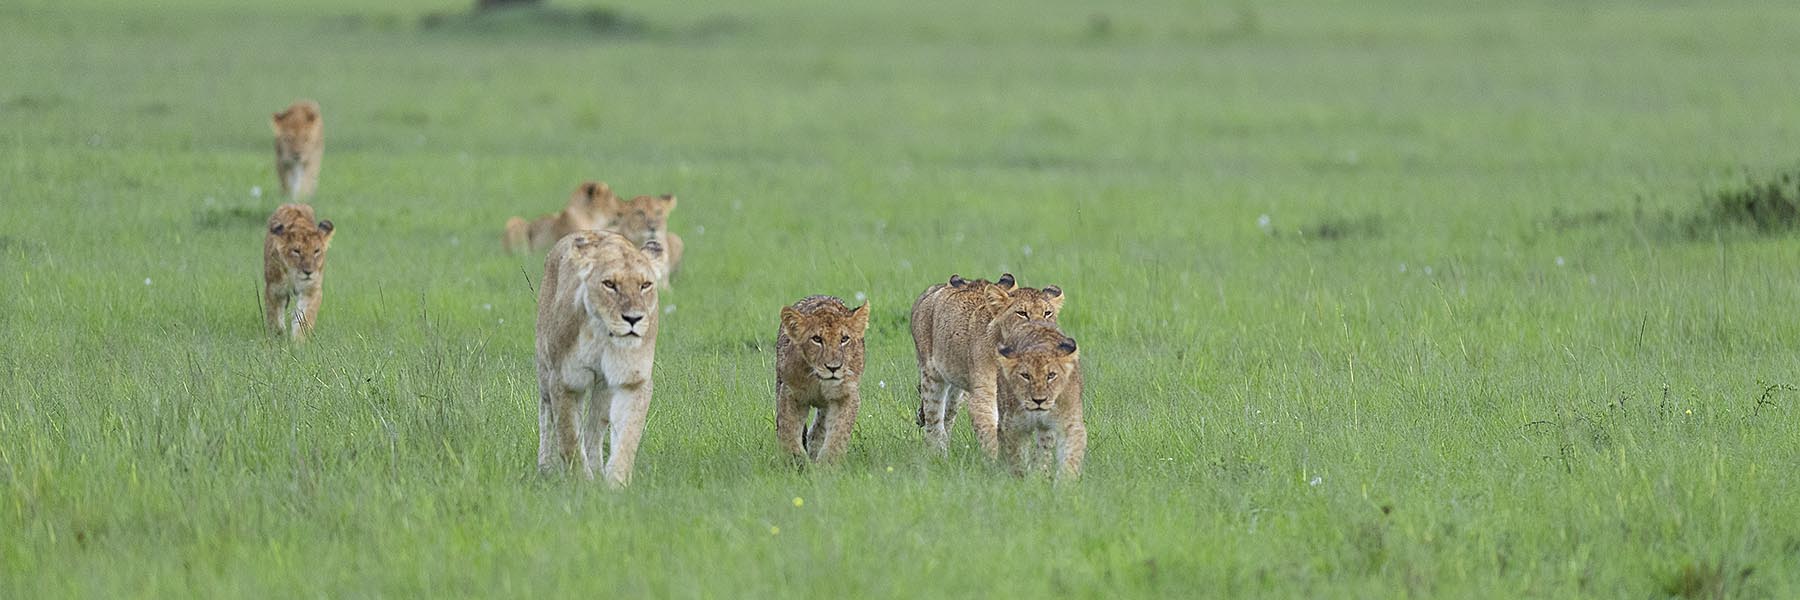 kenya big five safari